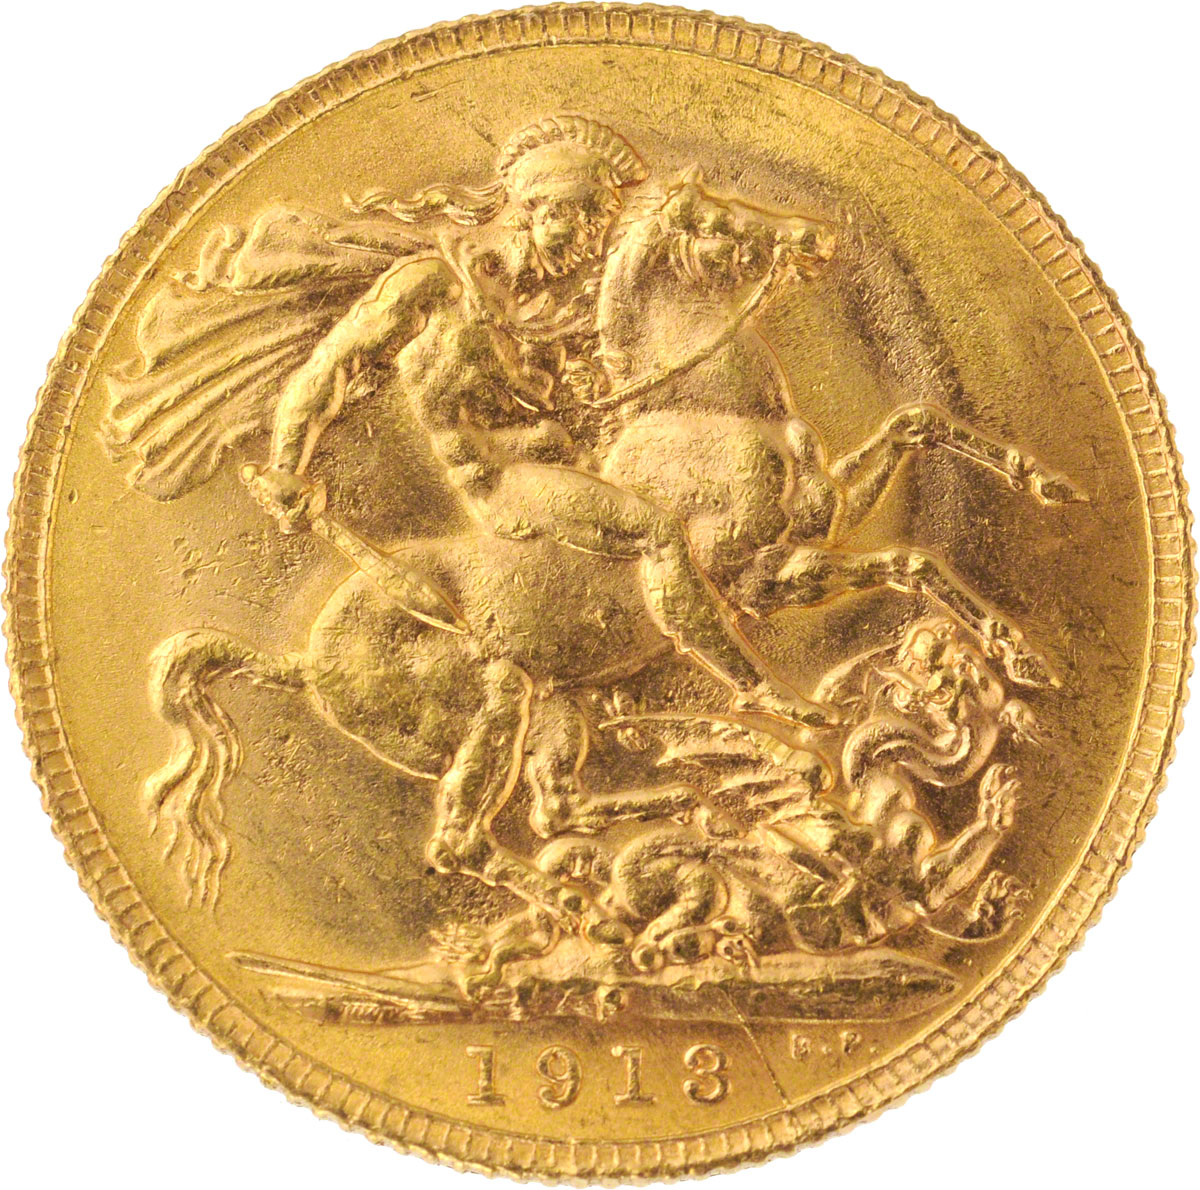 1913 Γεώργιος Ε’ (Νομισματοκοπείο Σίδνεϊ)